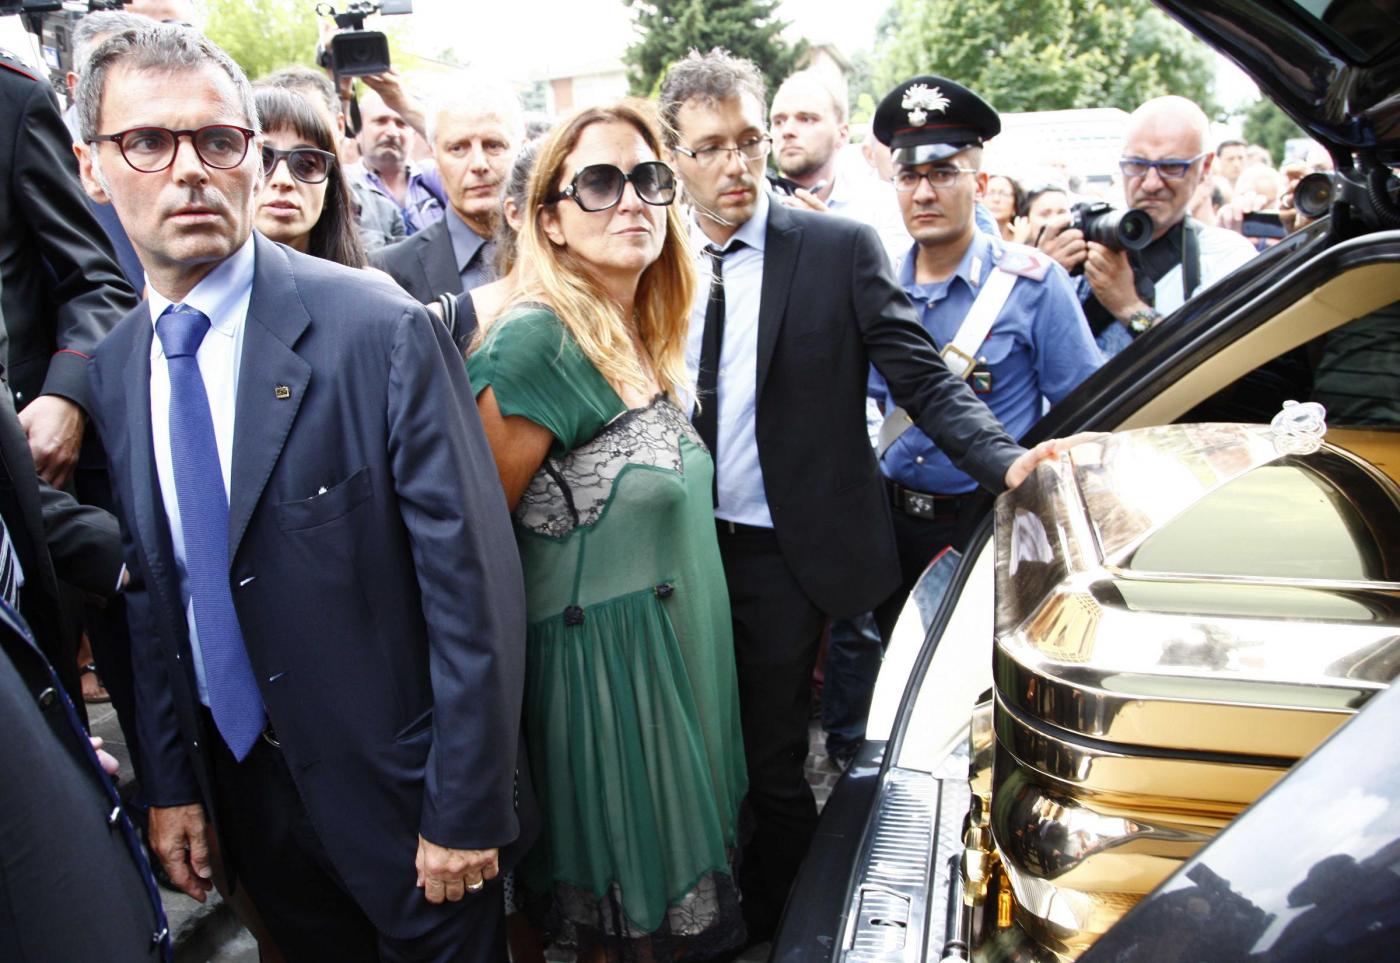 Alice Gruppioni, funerali la bara d'oro13